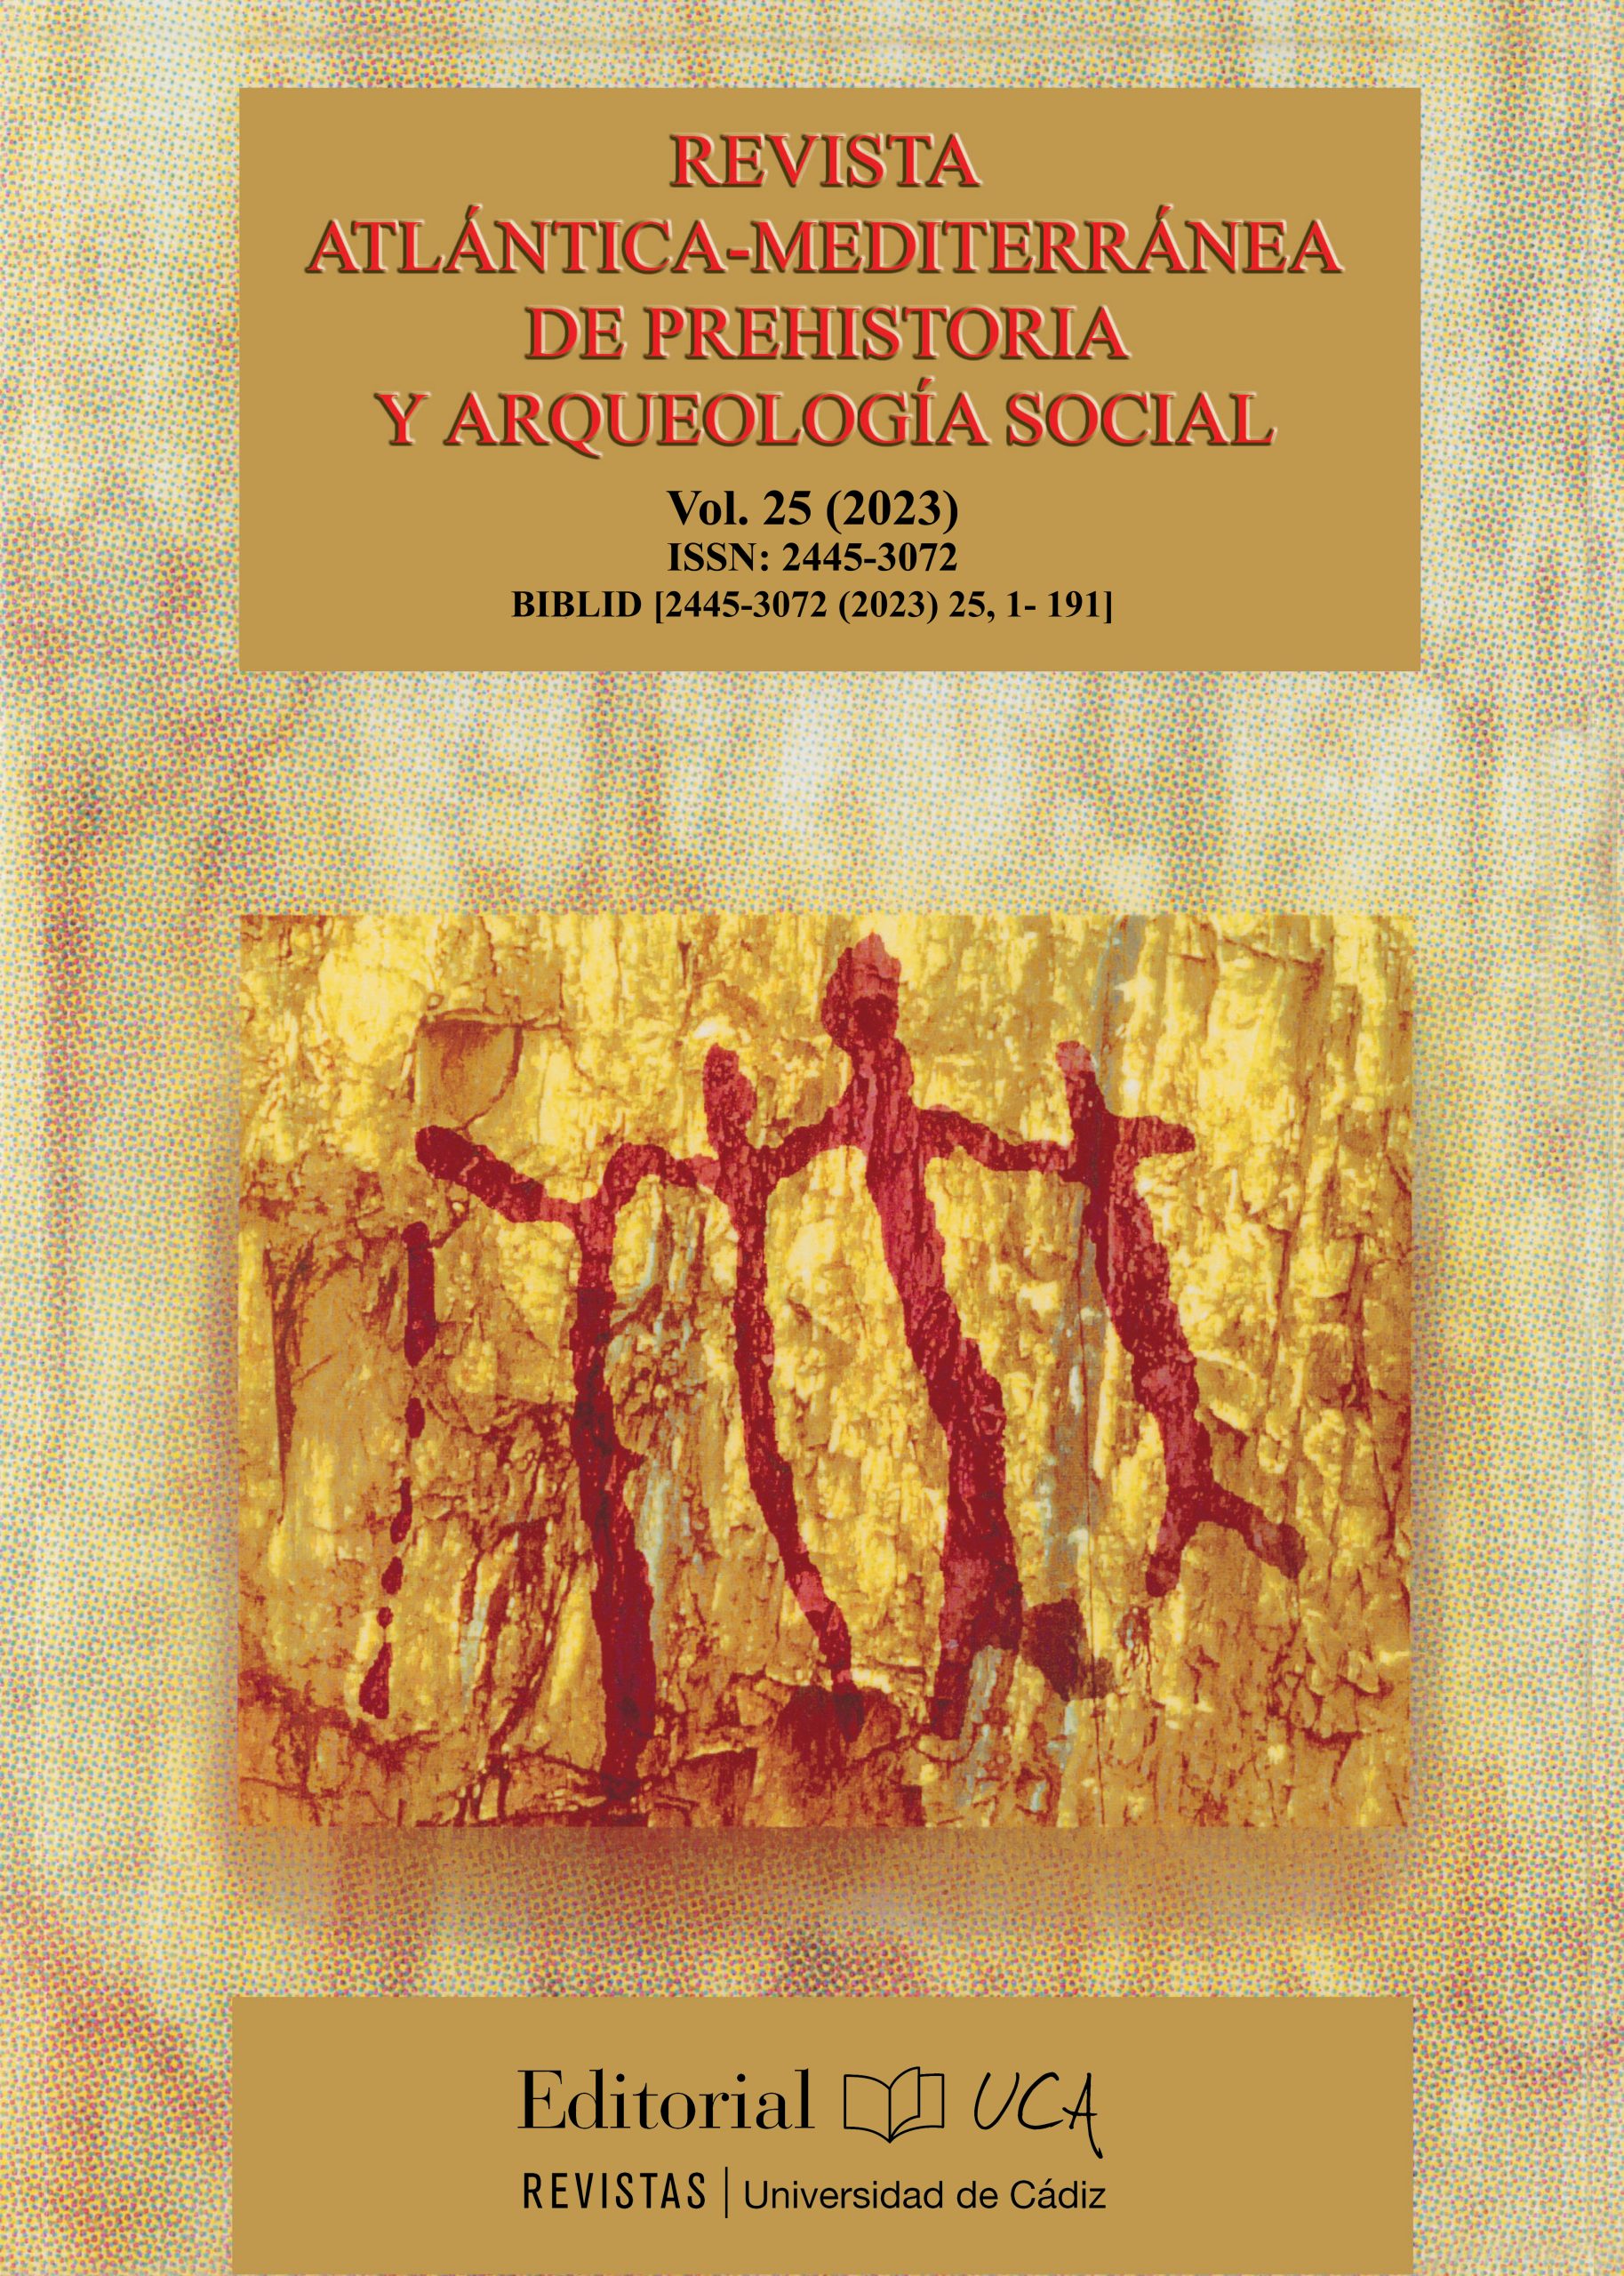 Revista Atlántica-Mediterránea de Prehistoria y Arqueología Social Vol. 25 (2023)